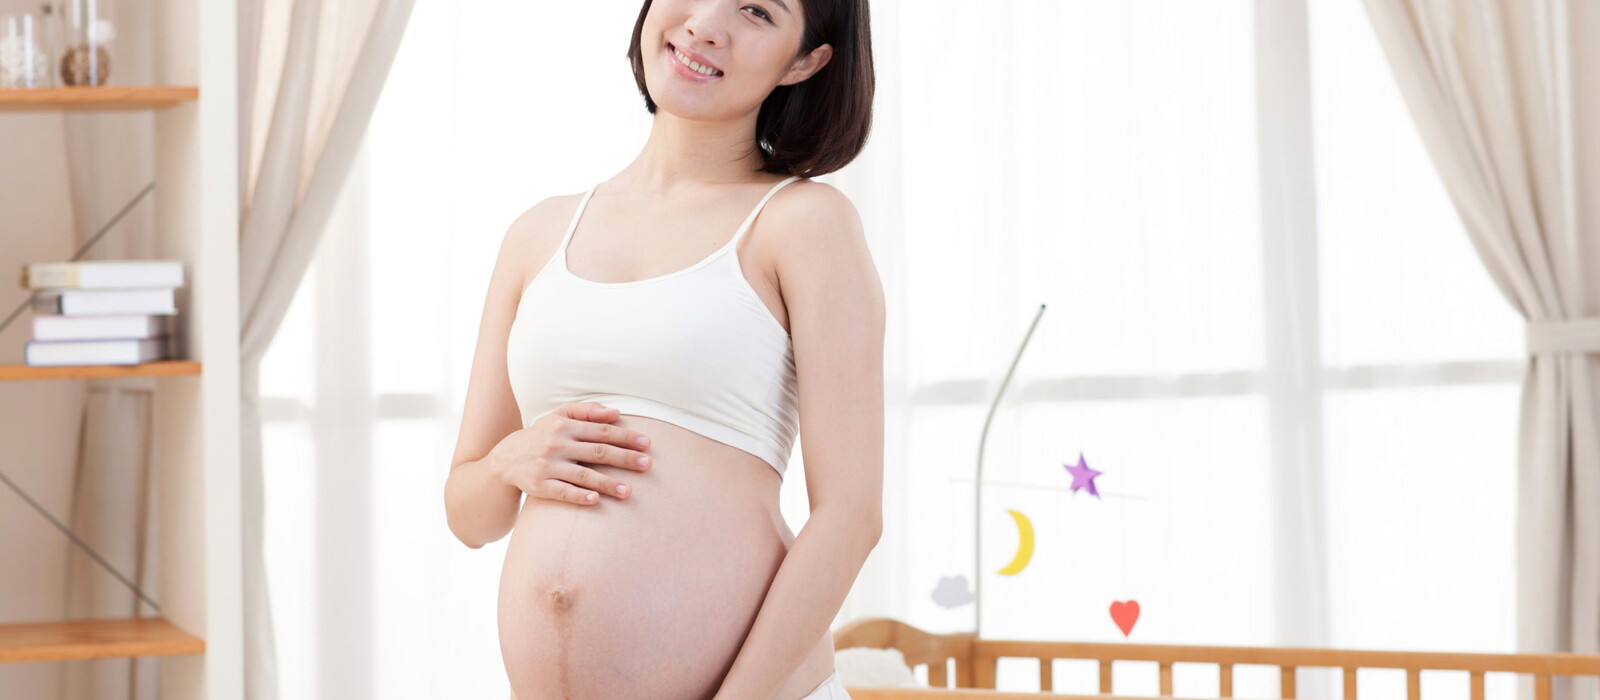 อายุครรภ์ 5 สัปดาห์ คุณแม่ท้อง 5 สัปดาห์ เกิดอะไรขึ้นบ้าง